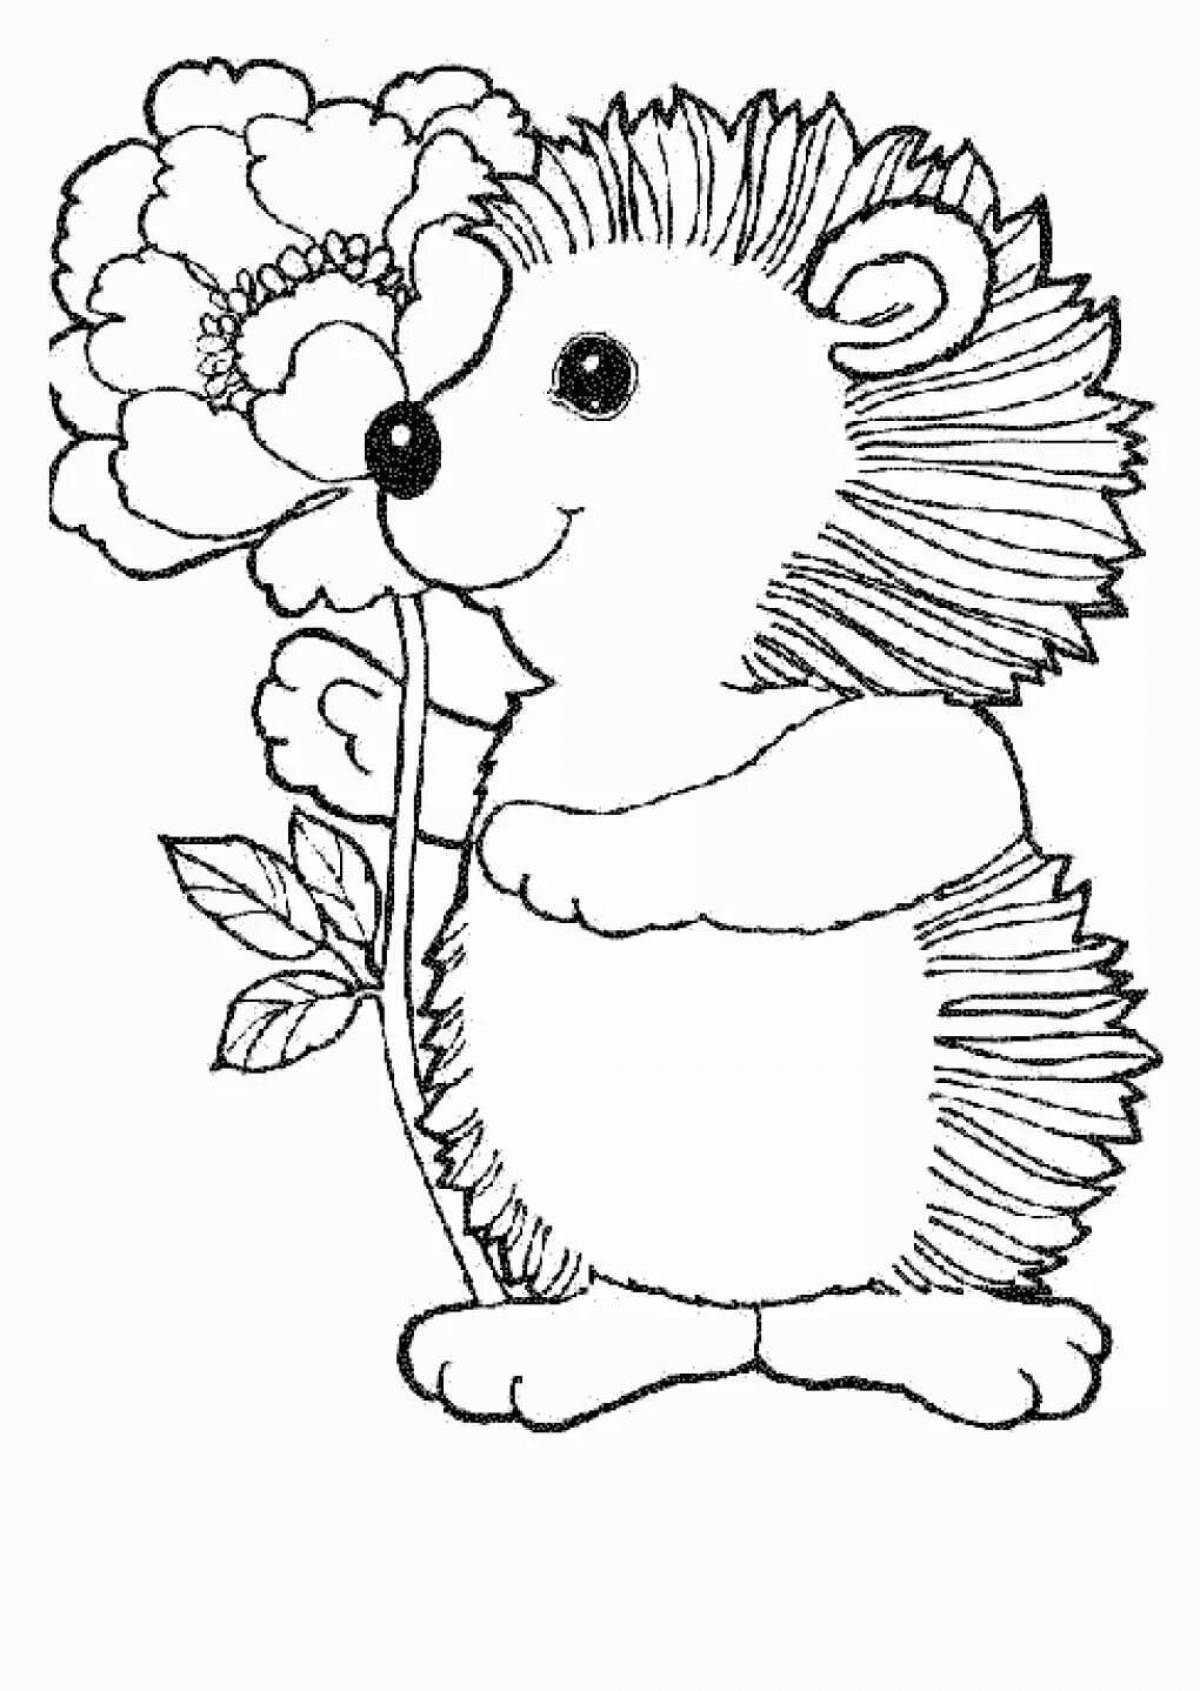 Violent hedgehog drawing for kids